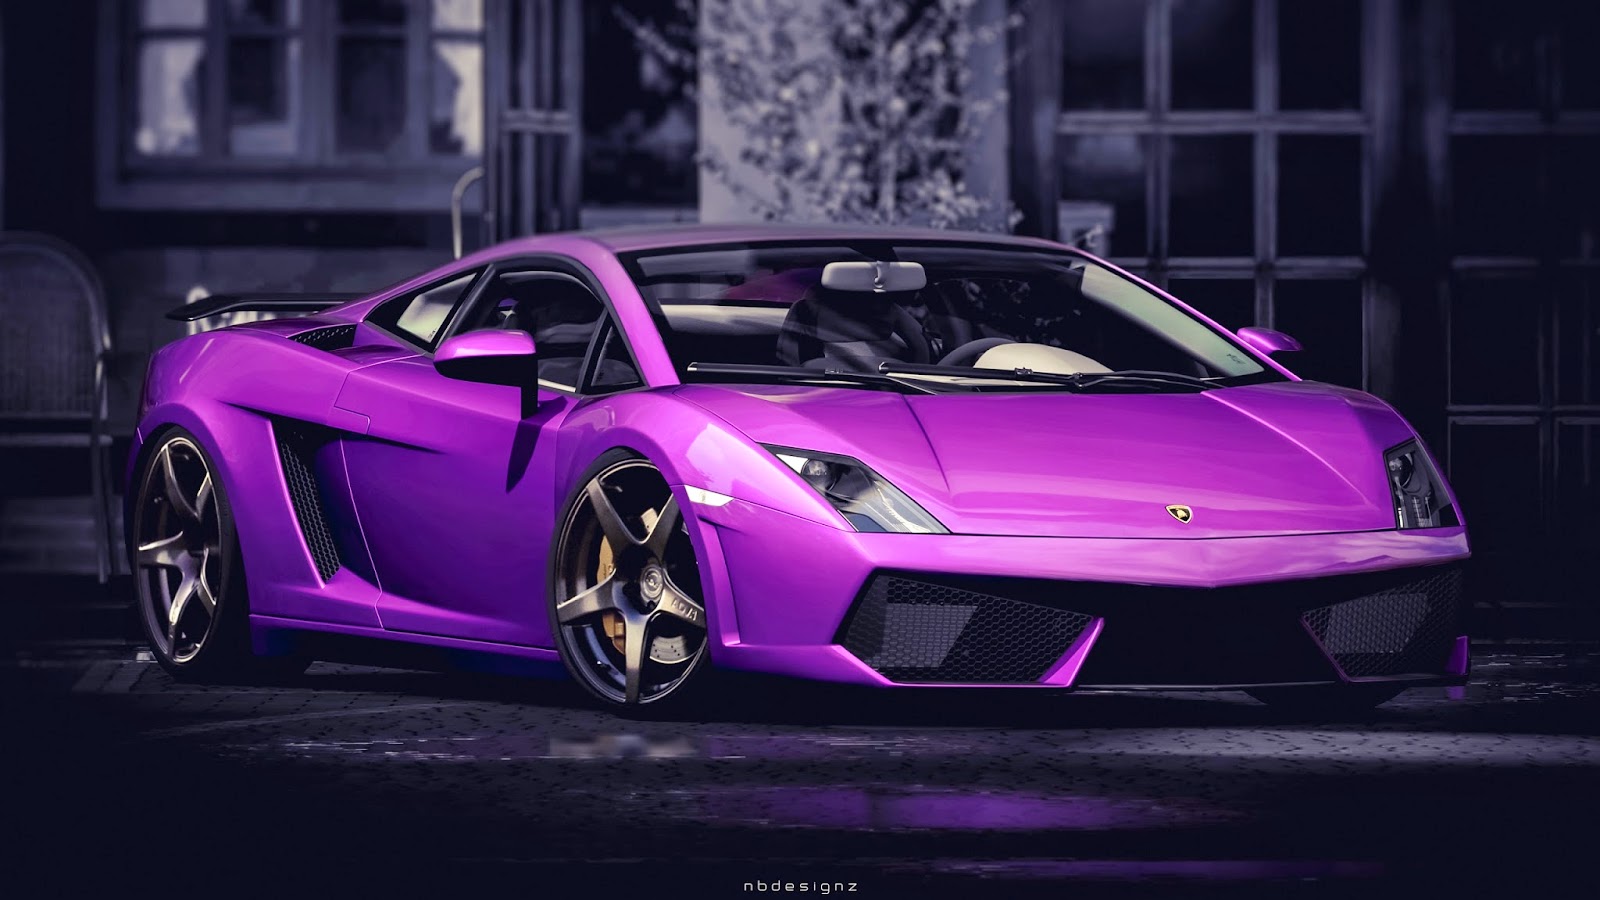 Purple Lamborghini Gallardo HD Wallpaper | Covers Heat